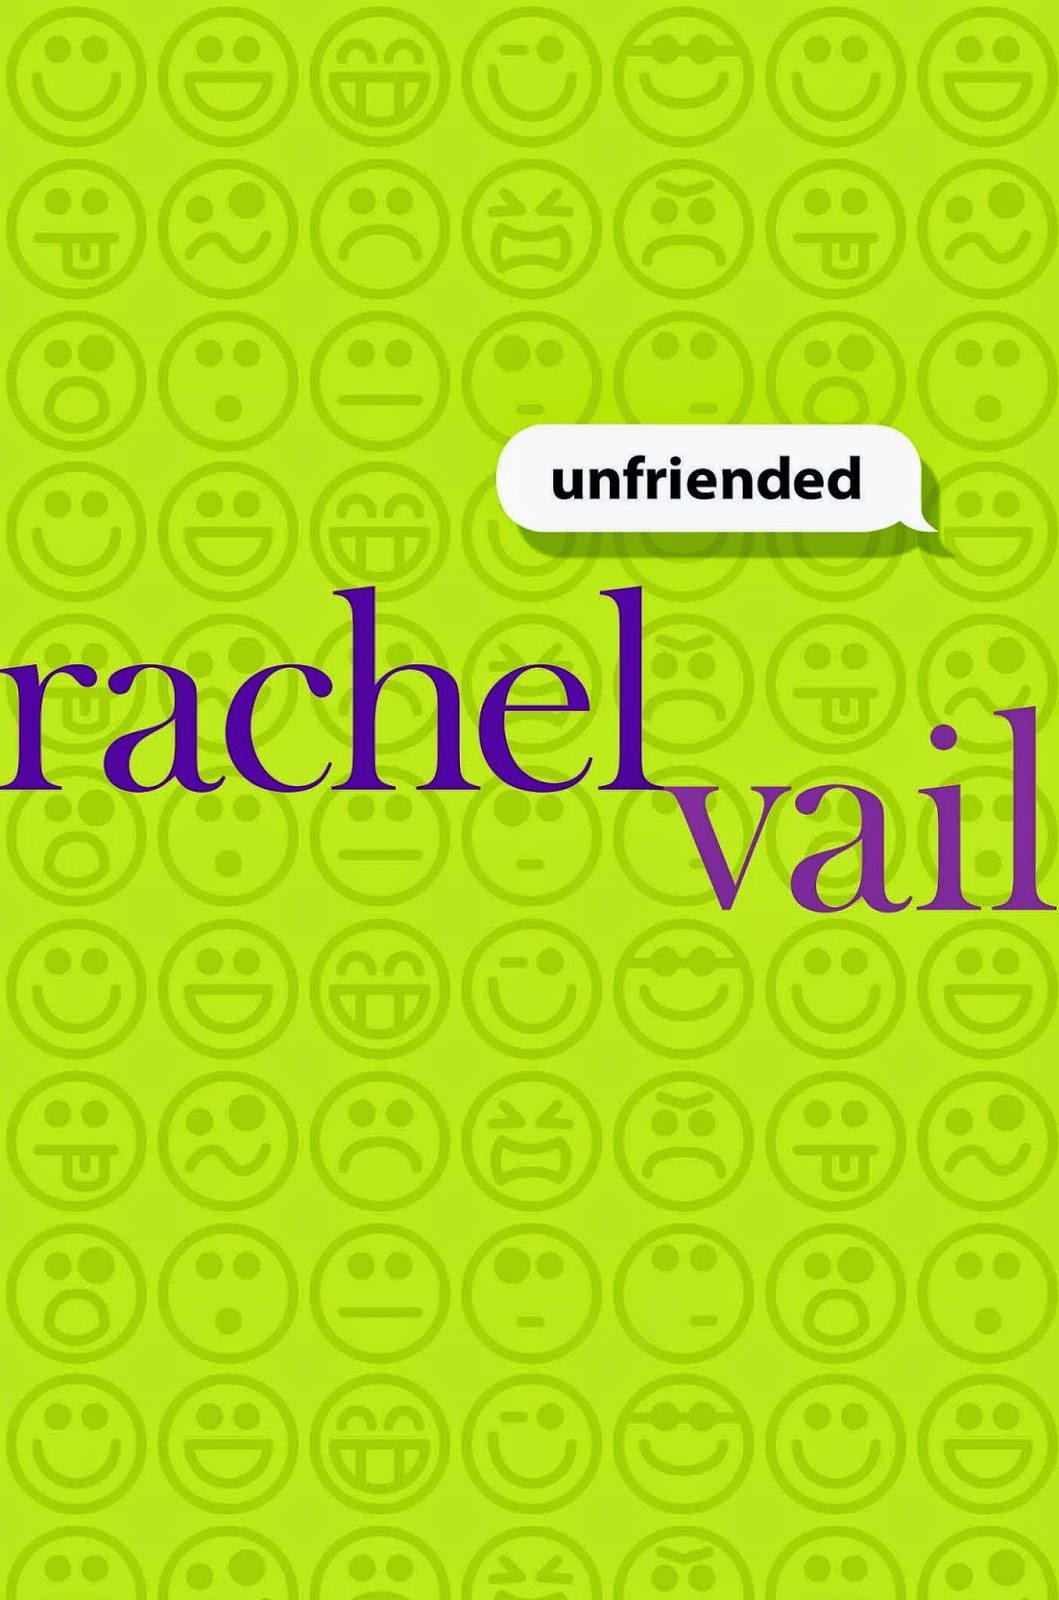 unfriended by rachel vail